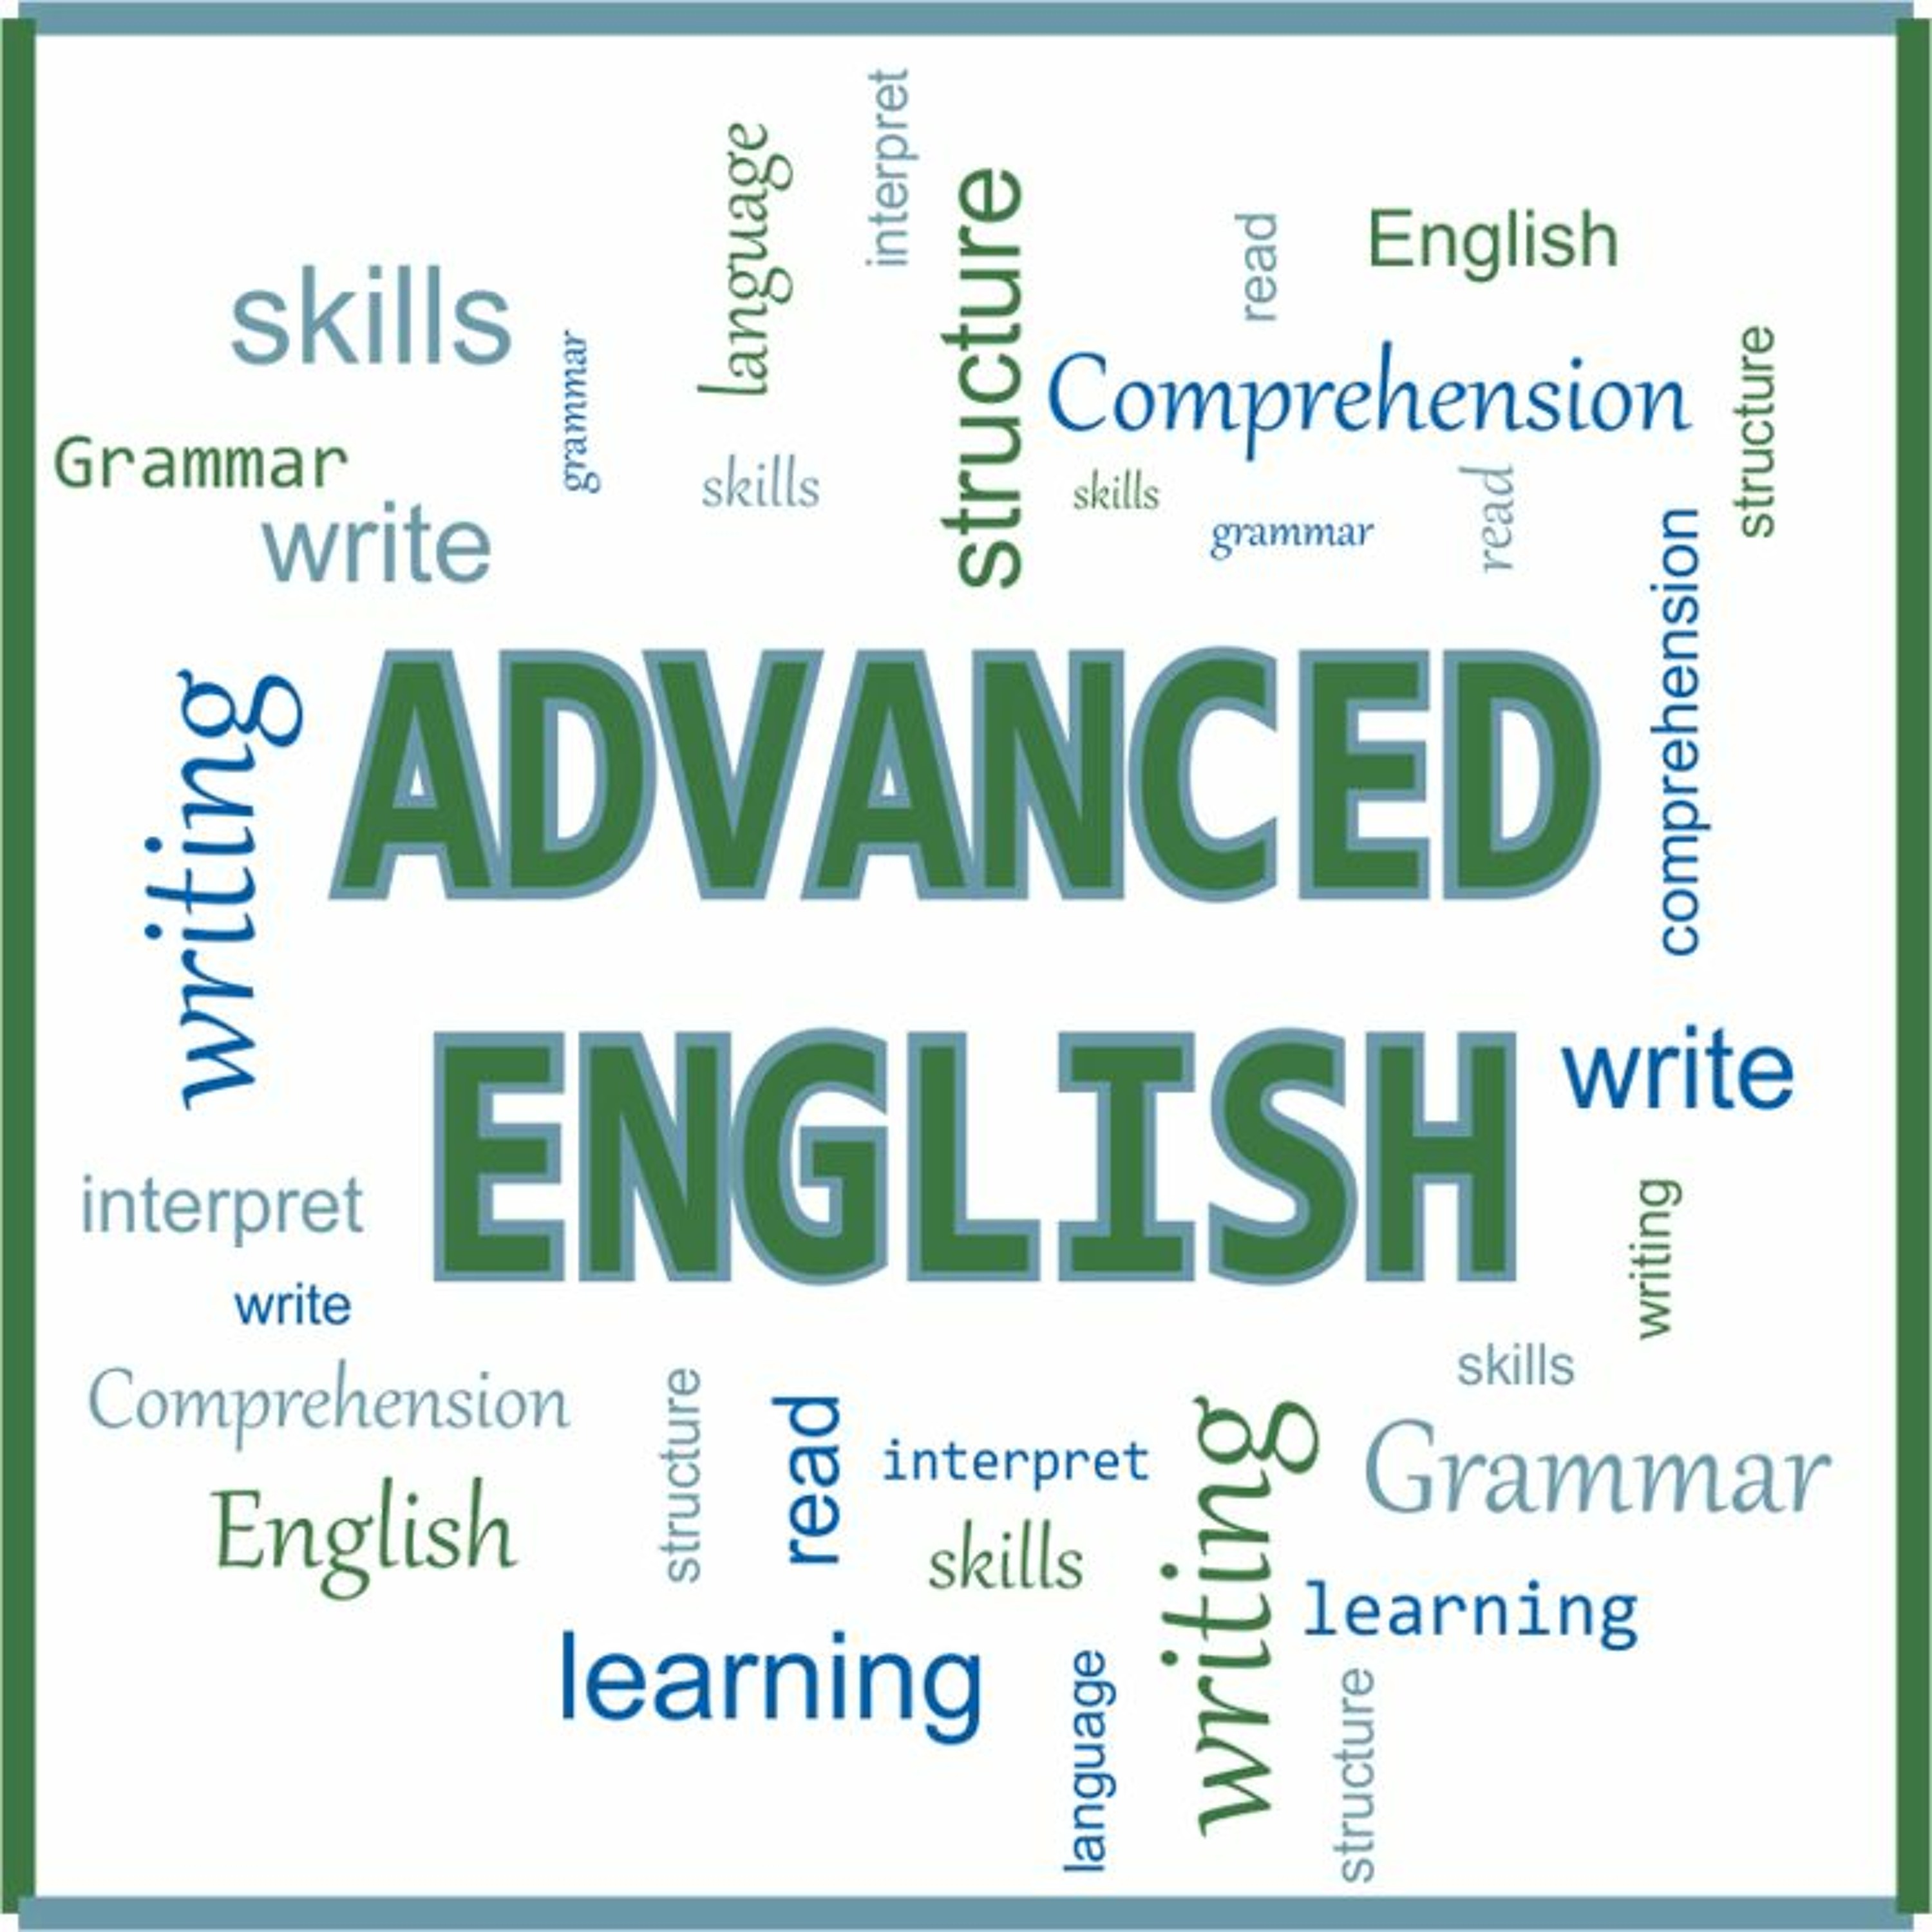 1 продвинутый уровень. Английский язык продвинутый уровень. Английский язык Advanced. Advanced уровень английского. Уровни английского языка Advanced.